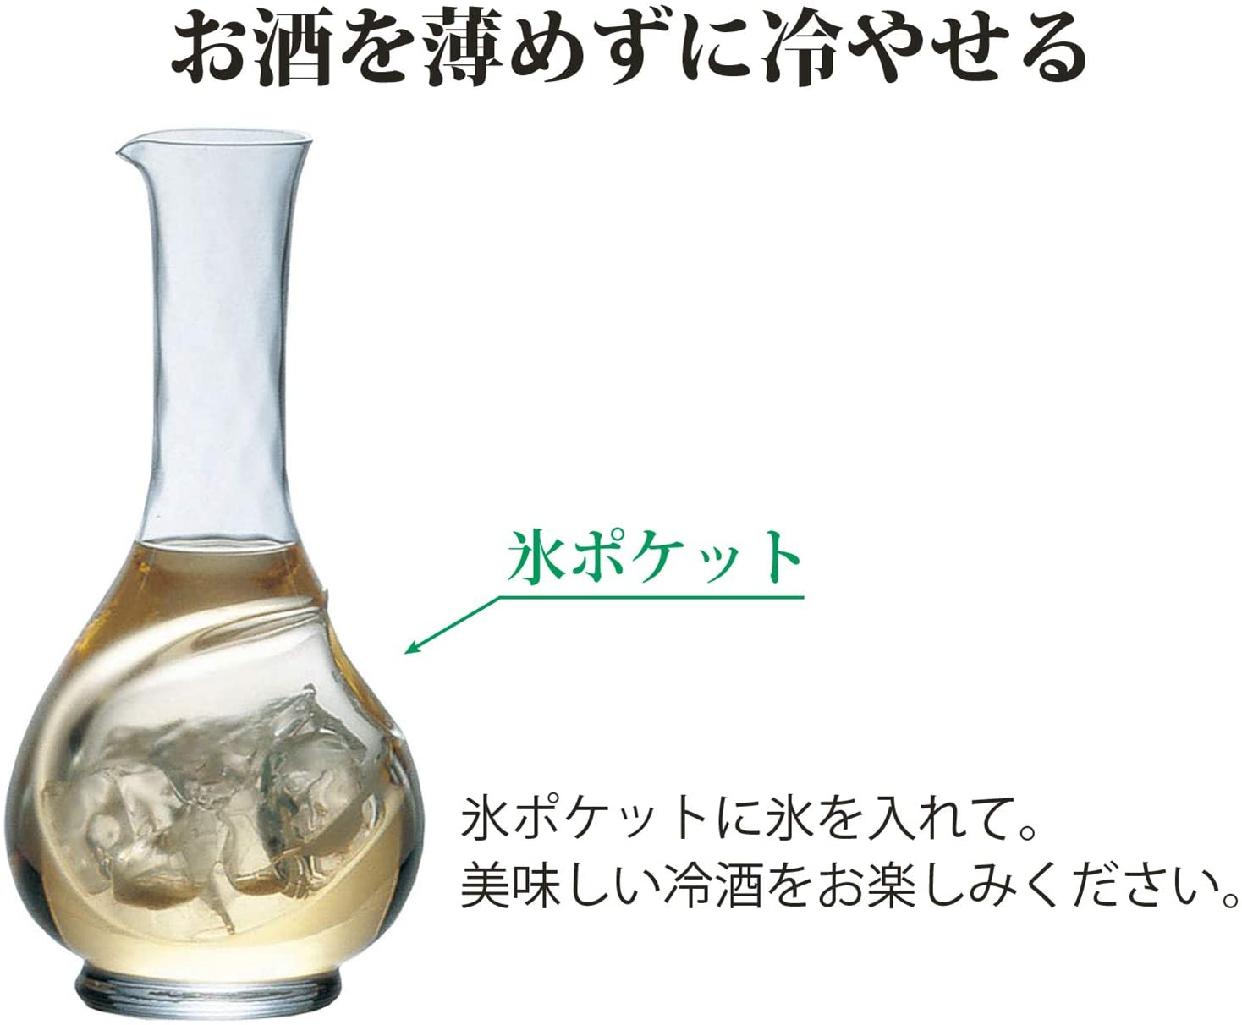 東洋佐々木ガラス(トウヨウササキガラス) ワインクーラー(小) 450ml 61232の商品画像サムネ5 